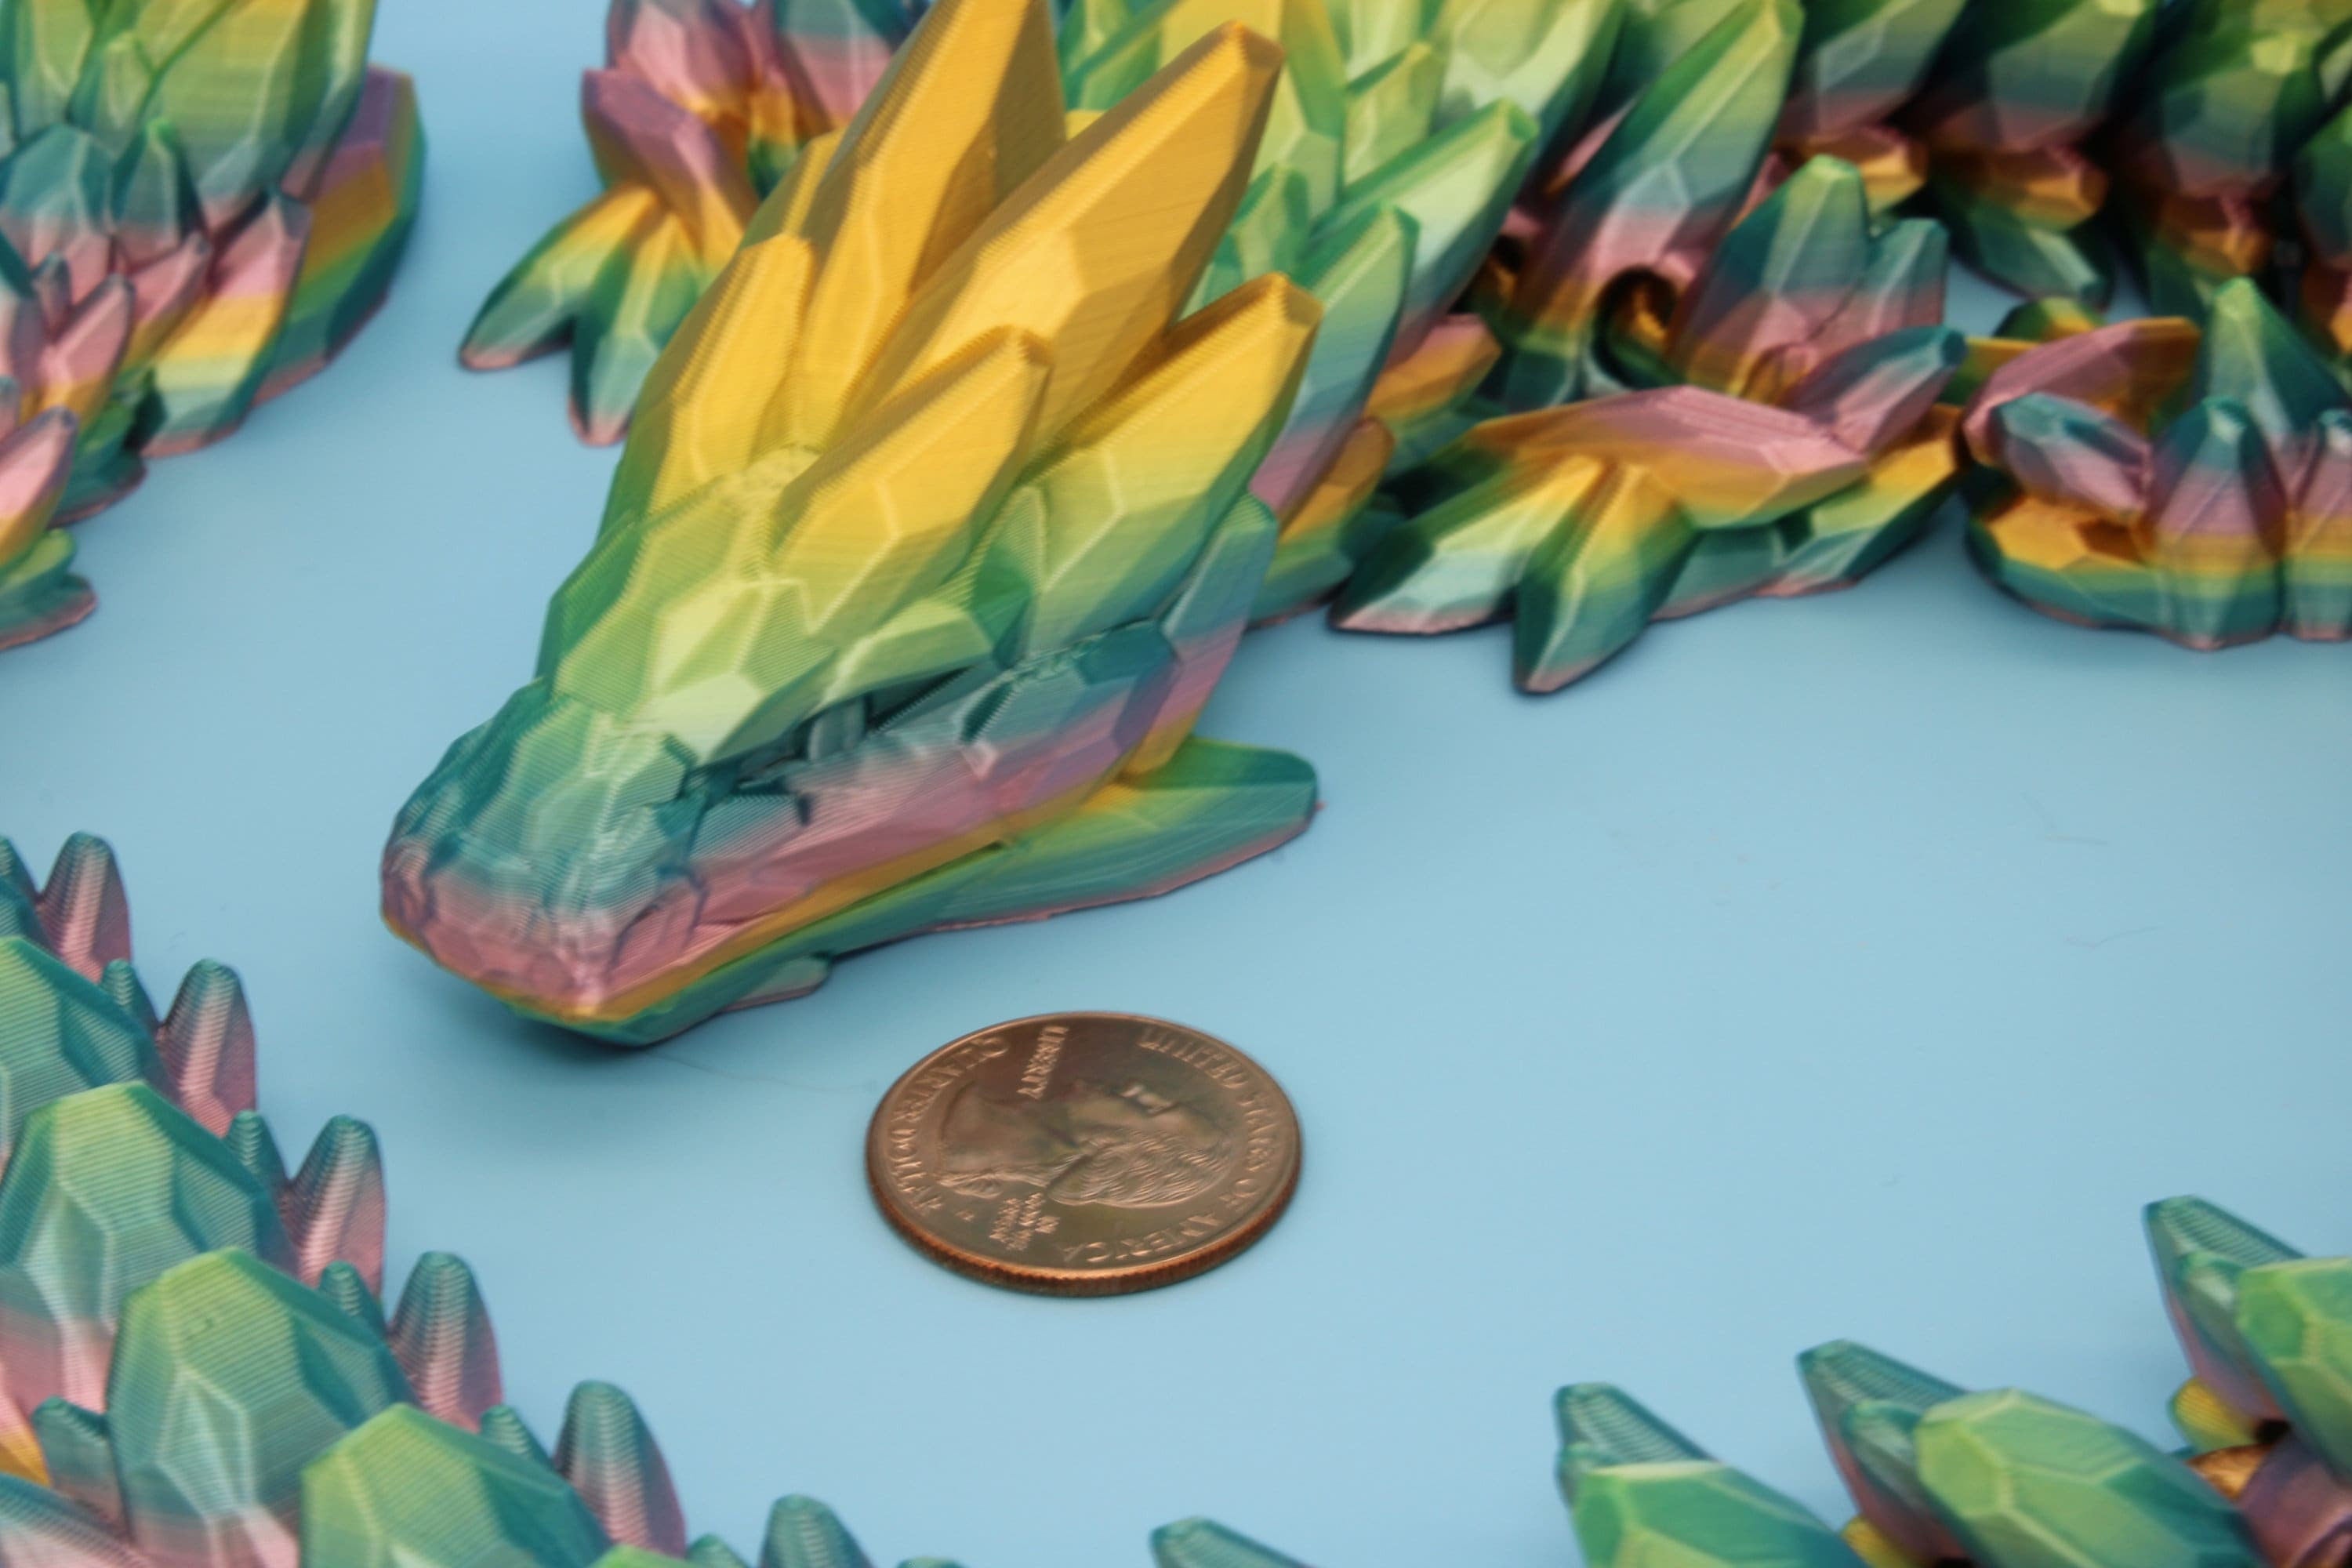 Gem Dragon | Rainbow | 3D Printed Articulating Dragon | Flexi Toy | Adult Fidget Toy | Dragon Buddy | 26 inches (Made)